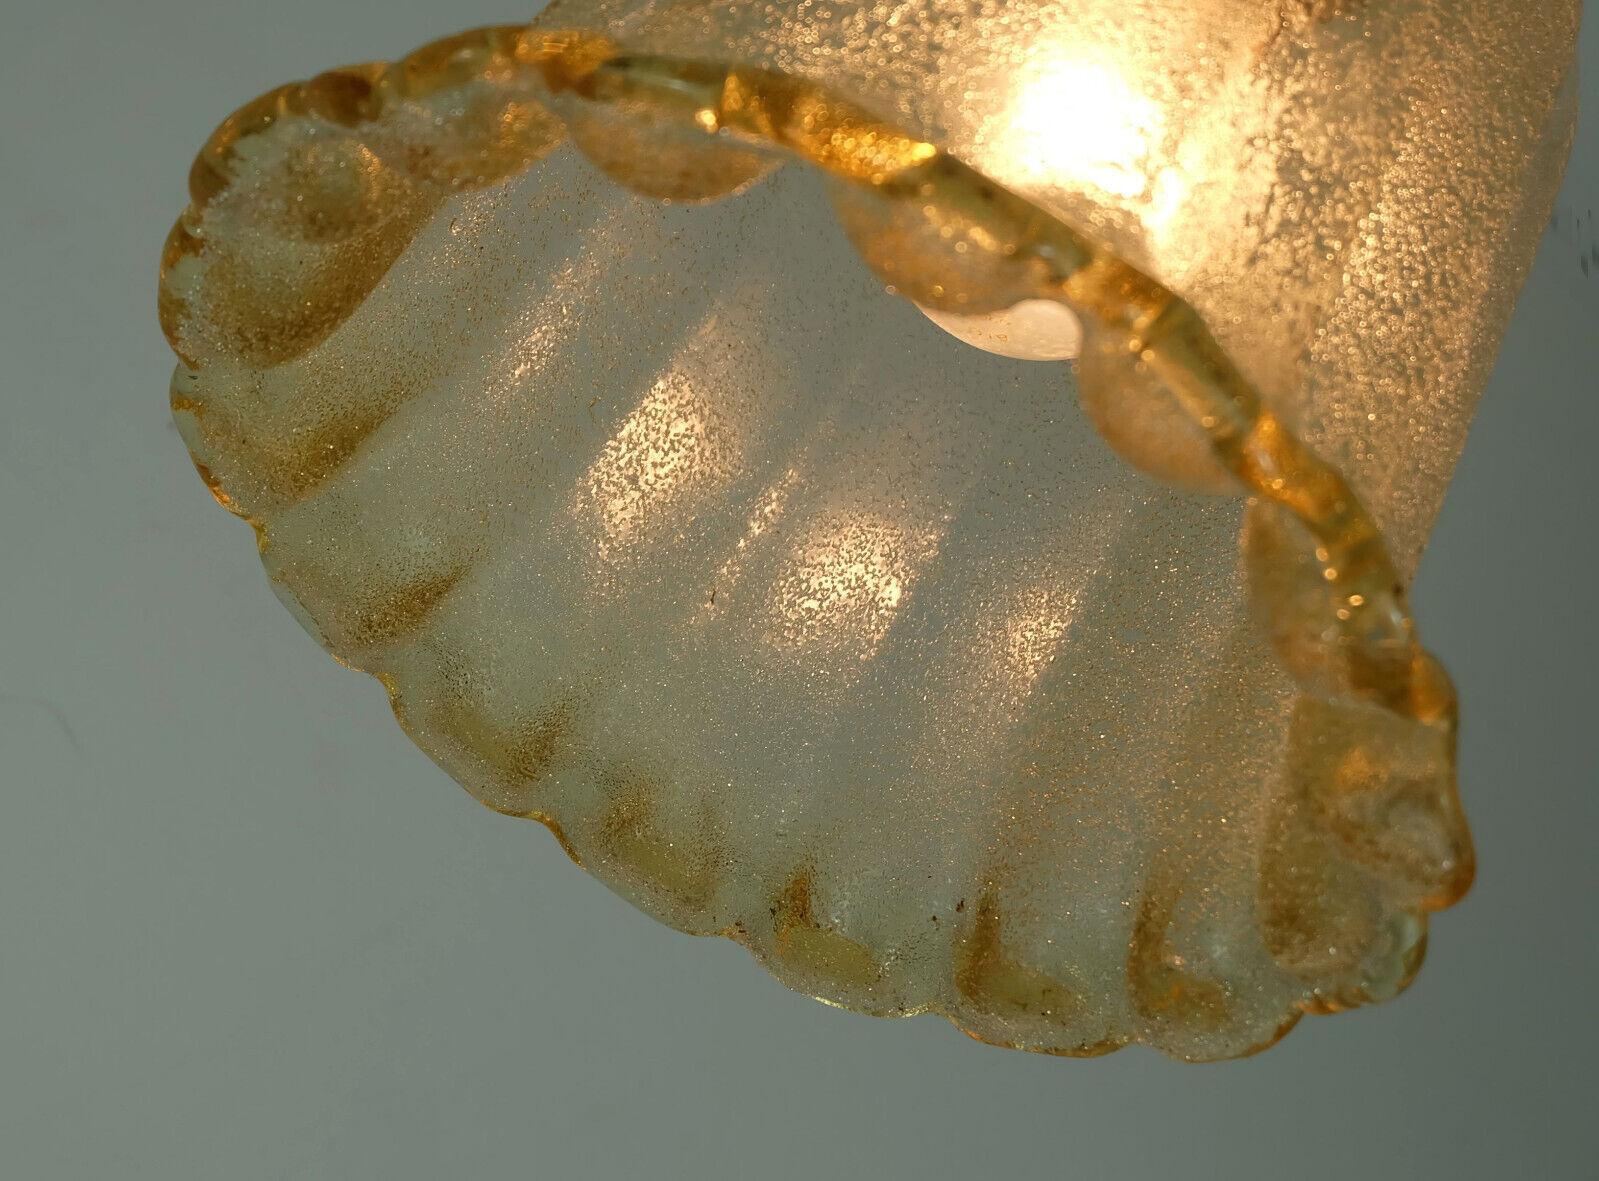 Magnifique lampe suspendue des années 1970. L'abat-jour est en verre Pulegoso (mousse) de Murano avec de la poussière d'or fondue. La suspension, la chaîne et le baldaquin sont en laiton.

Dimensions en cm :
Longueur totale 62 cm, diamètre de